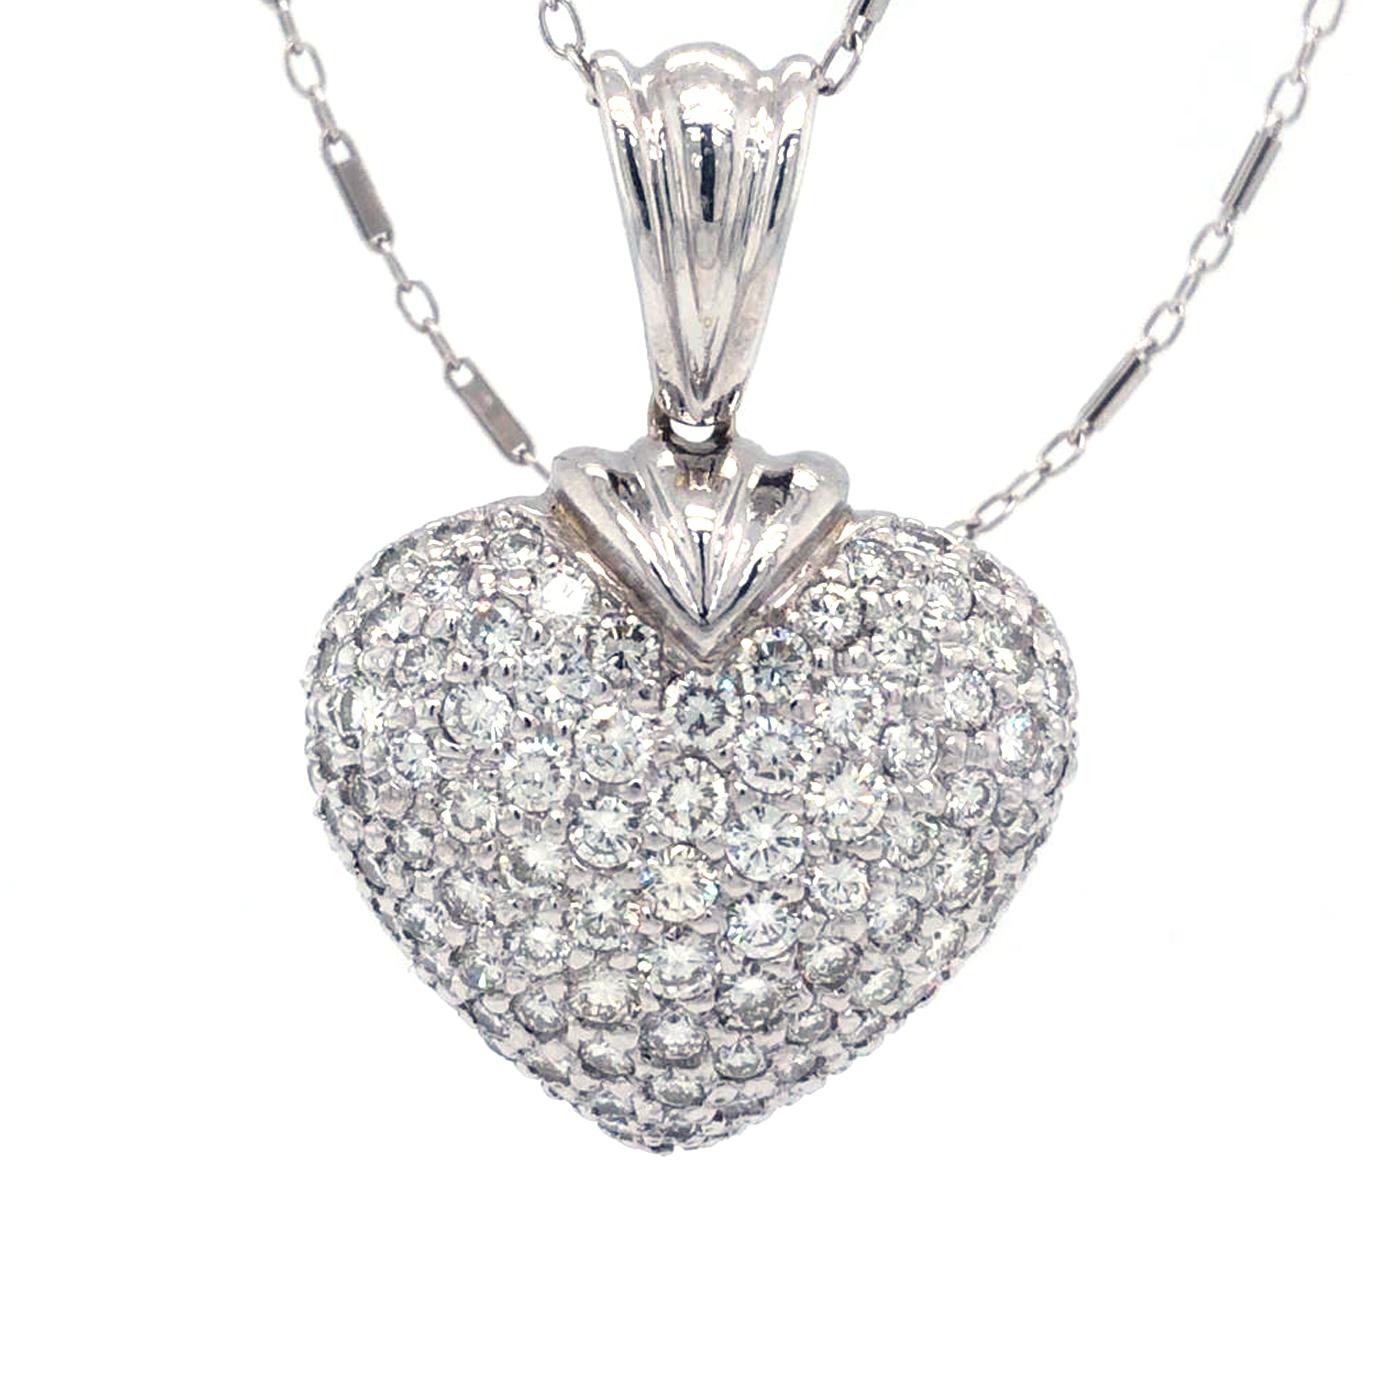 Un collier pendentif moderne en forme de cœur pavé, fabriqué en or blanc 18 carats.
Magnifique pendentif/collier en forme de cœur avec 3,5 ct de diamants naturels de taille ronde dans une superbe monture pavée. Il est également doté d'un or blanc